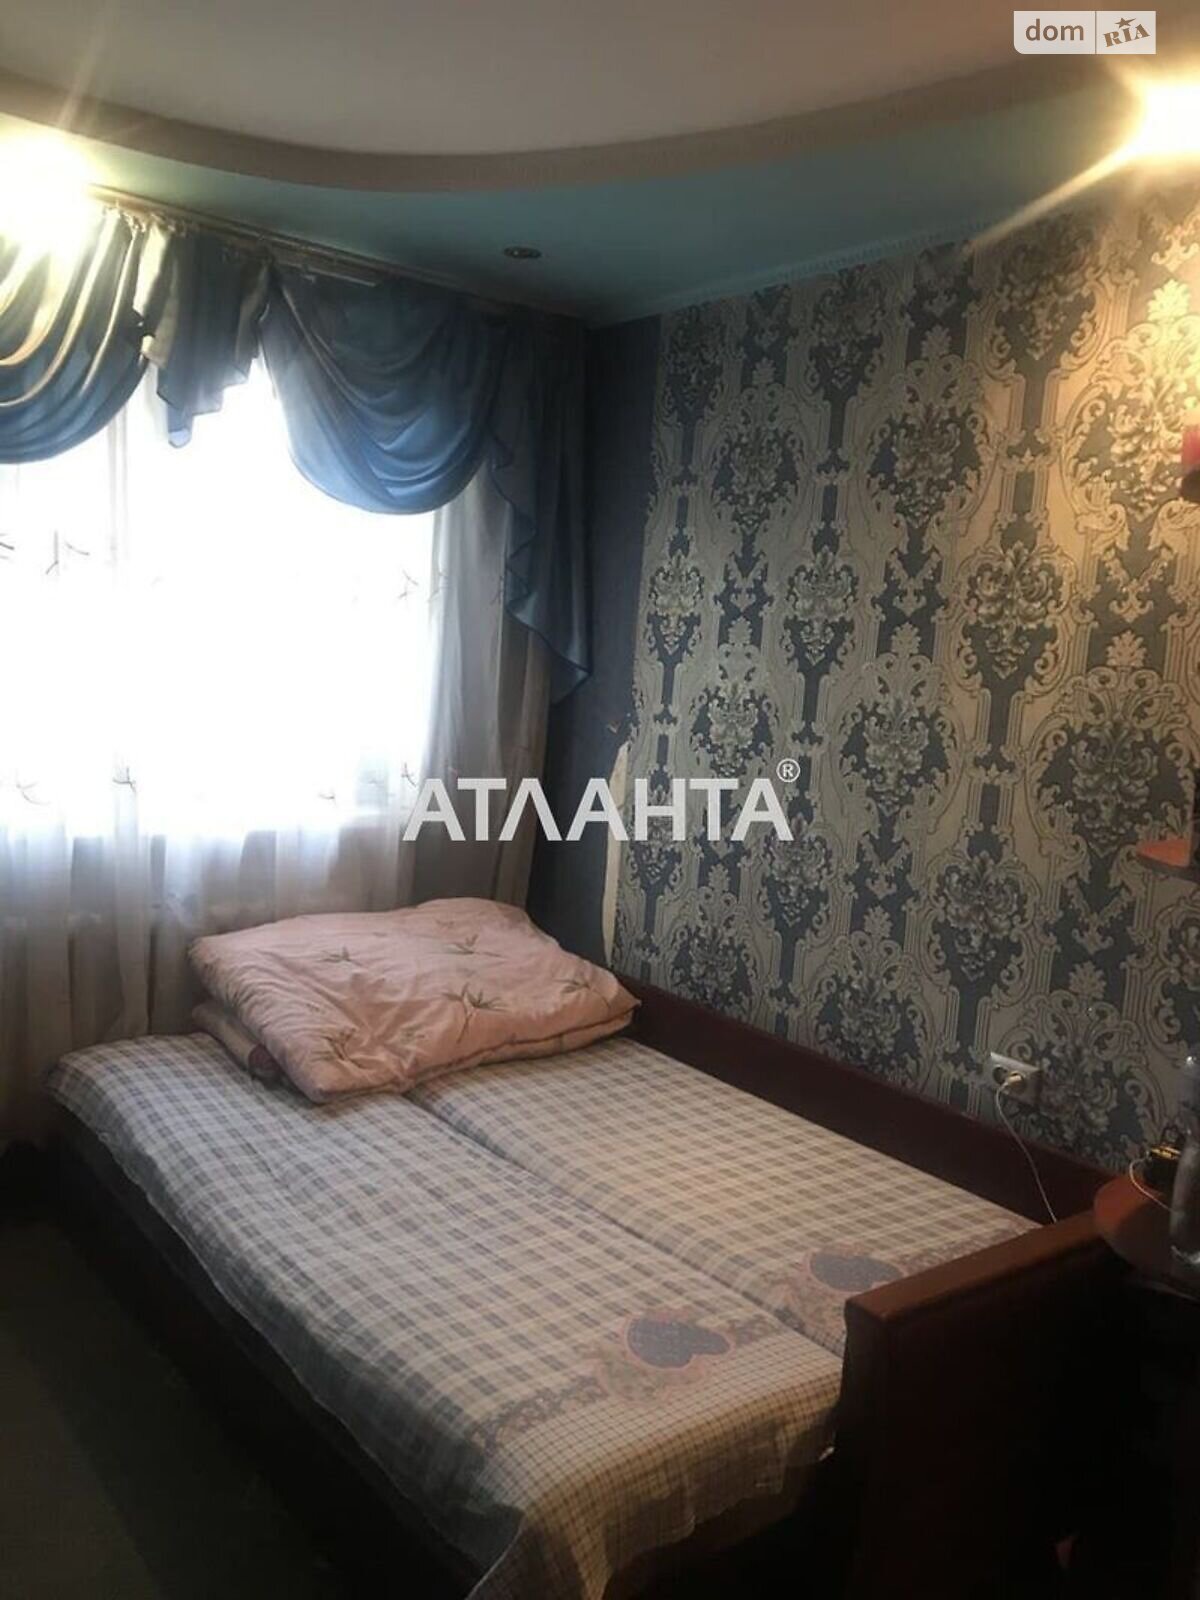 Коммерческое помещение в Одессе, продажа по Артиллерийская улица, район Приморский, цена: 75 000 долларов за объект фото 1